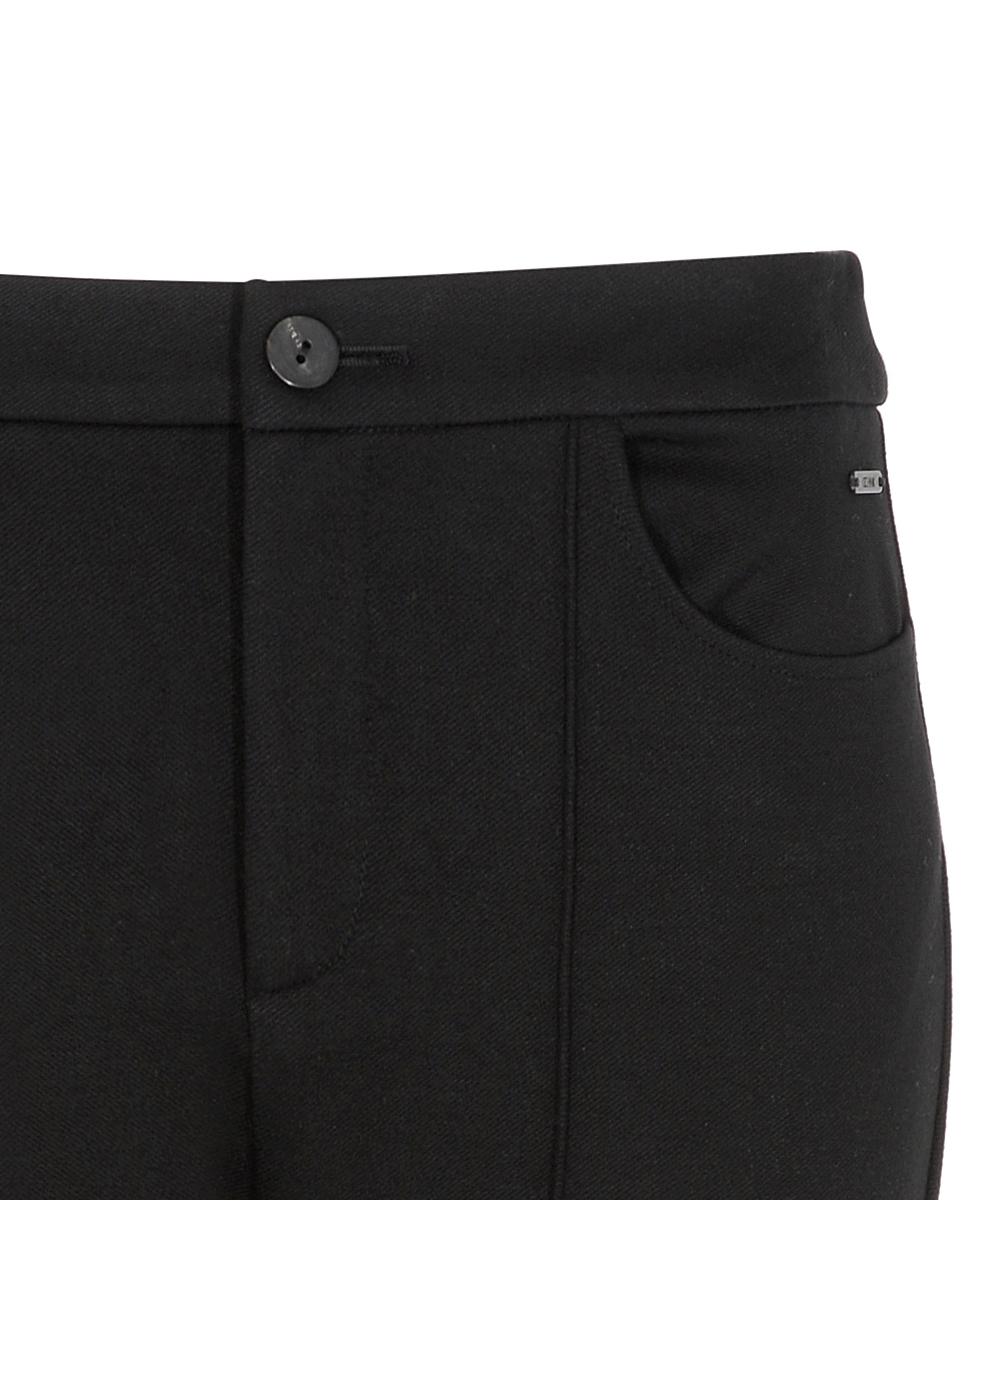 Czarne spodnie damskie z przeszyciem SPODT-0049-99(Z21)